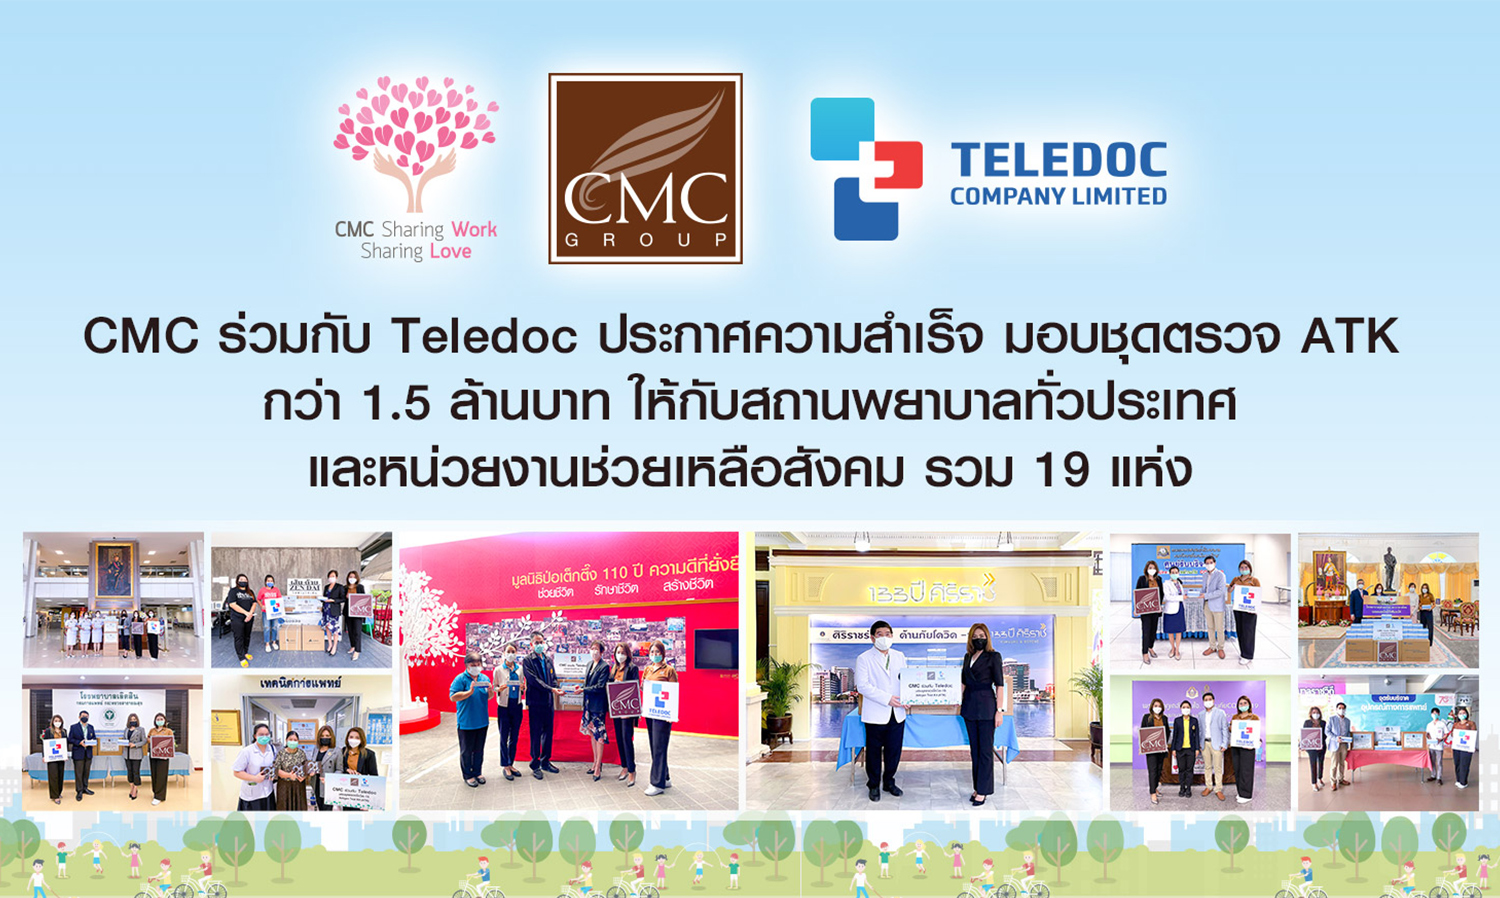 CMC ร่วมกับ Teledoc ประกาศความสำเร็จ มอบชุดตรวจ ATK กว่า 1.5 ล้านบาท ให้กับสถานพยาบาลทั่วประเทศและหน่วยงานช่วยเหลือสังคม รวม 19 แห่ง